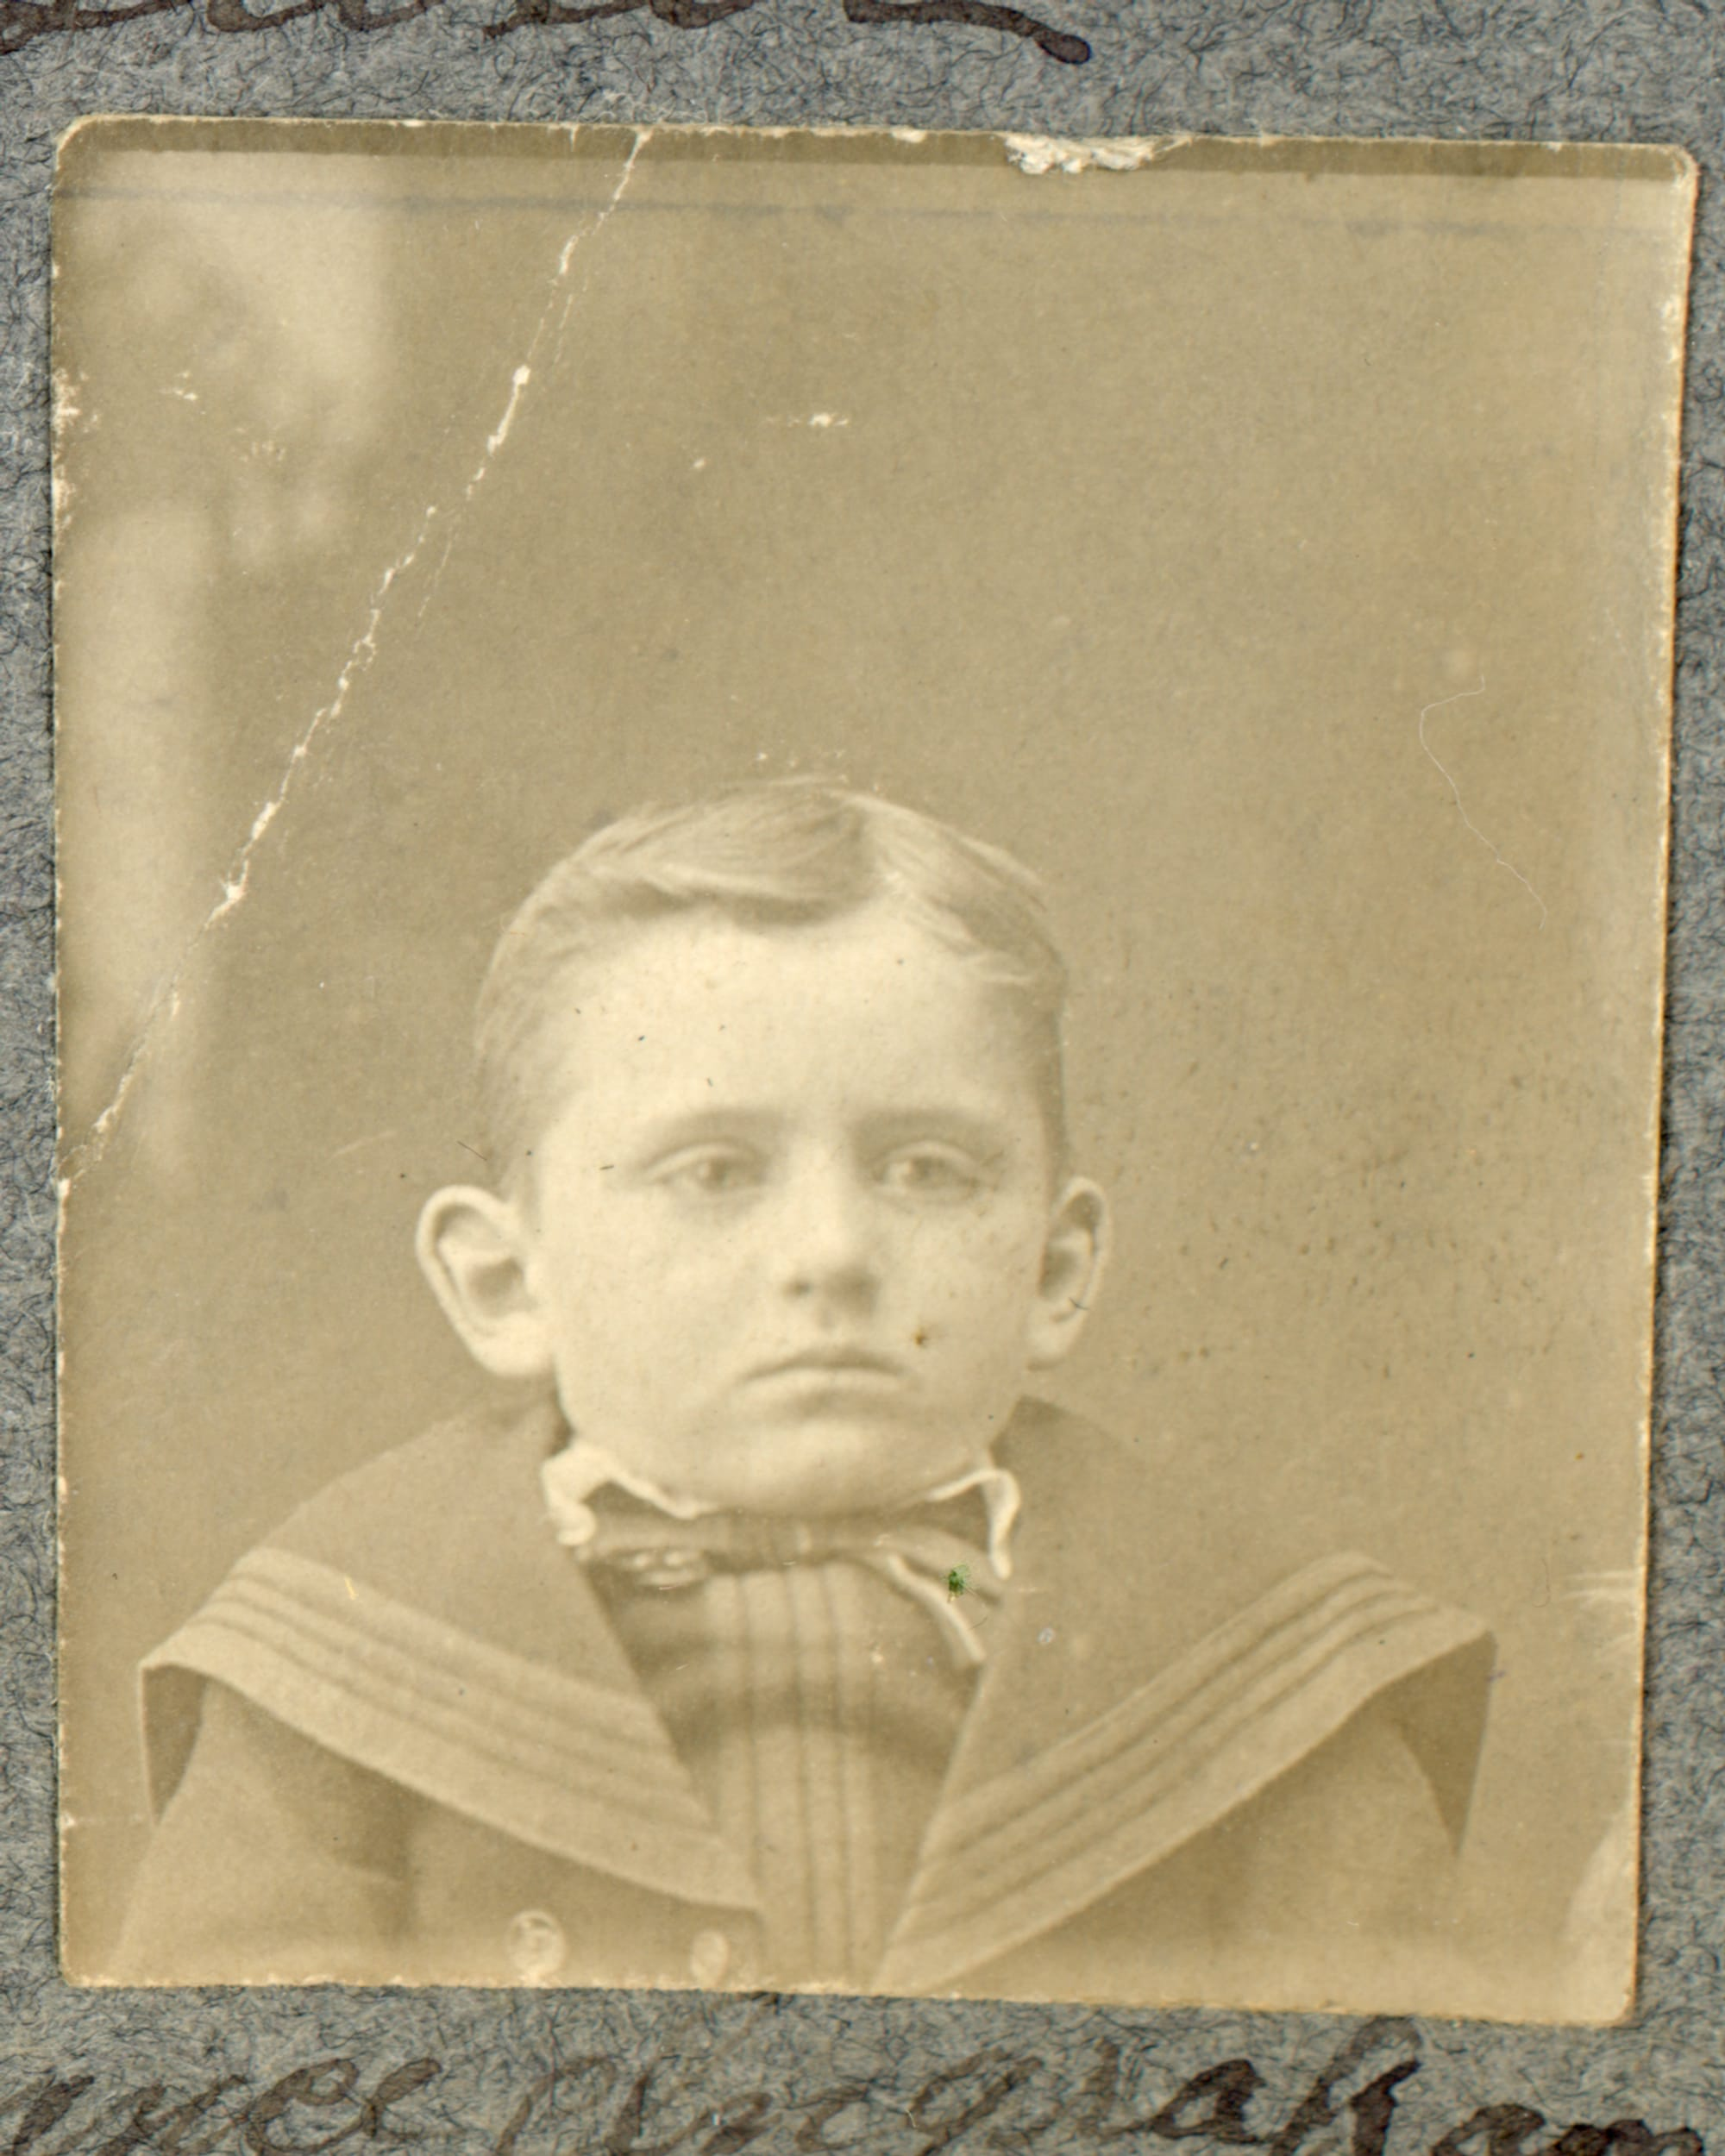 Clarence Ingraham, 1904, age 6